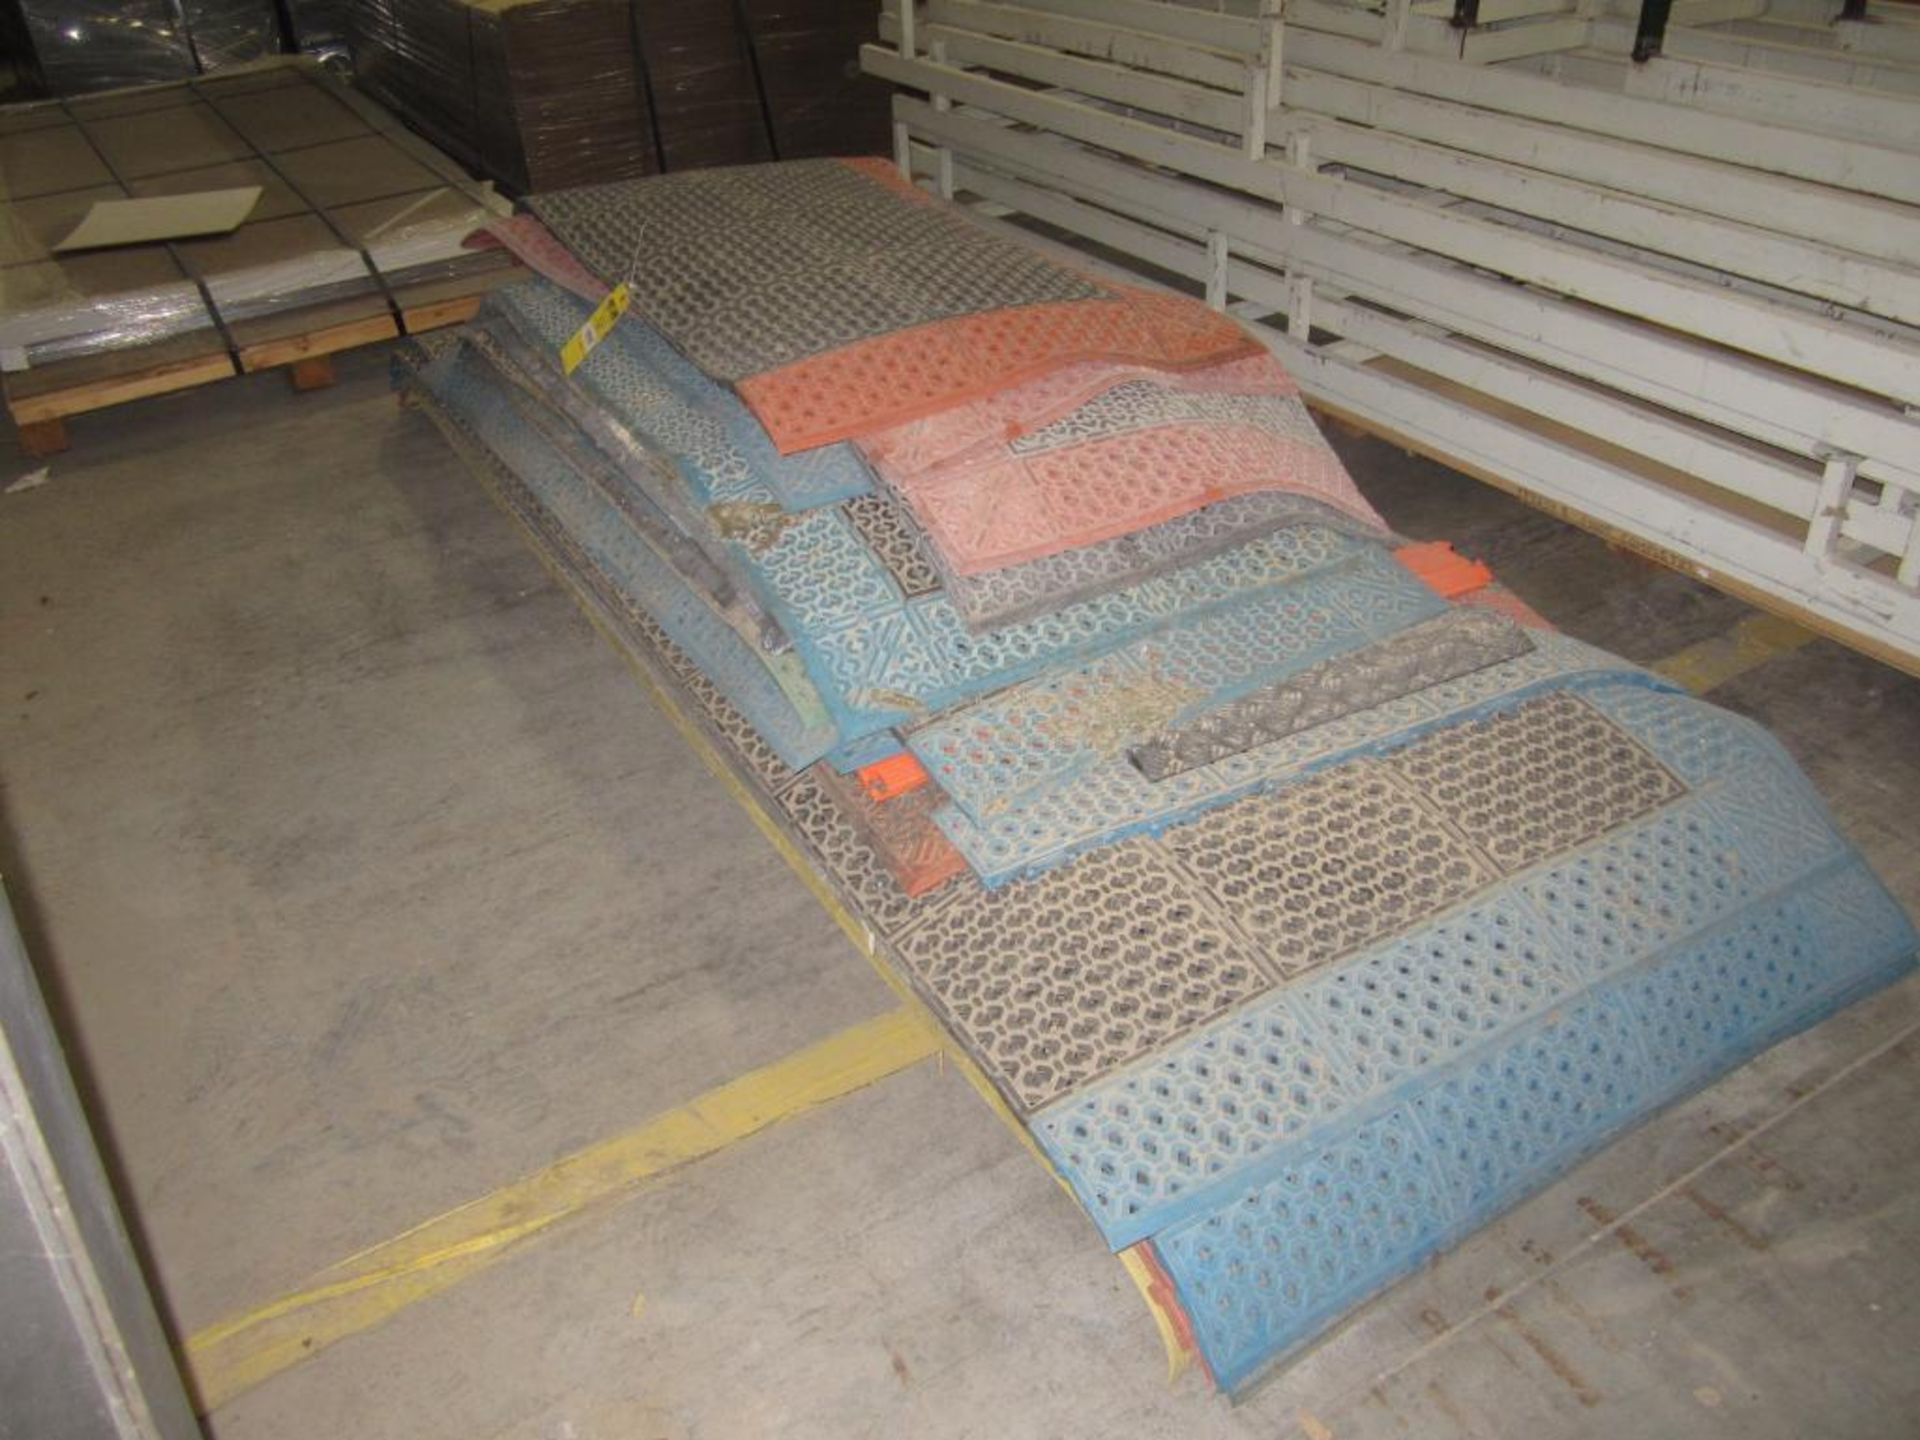 Pallet of mats